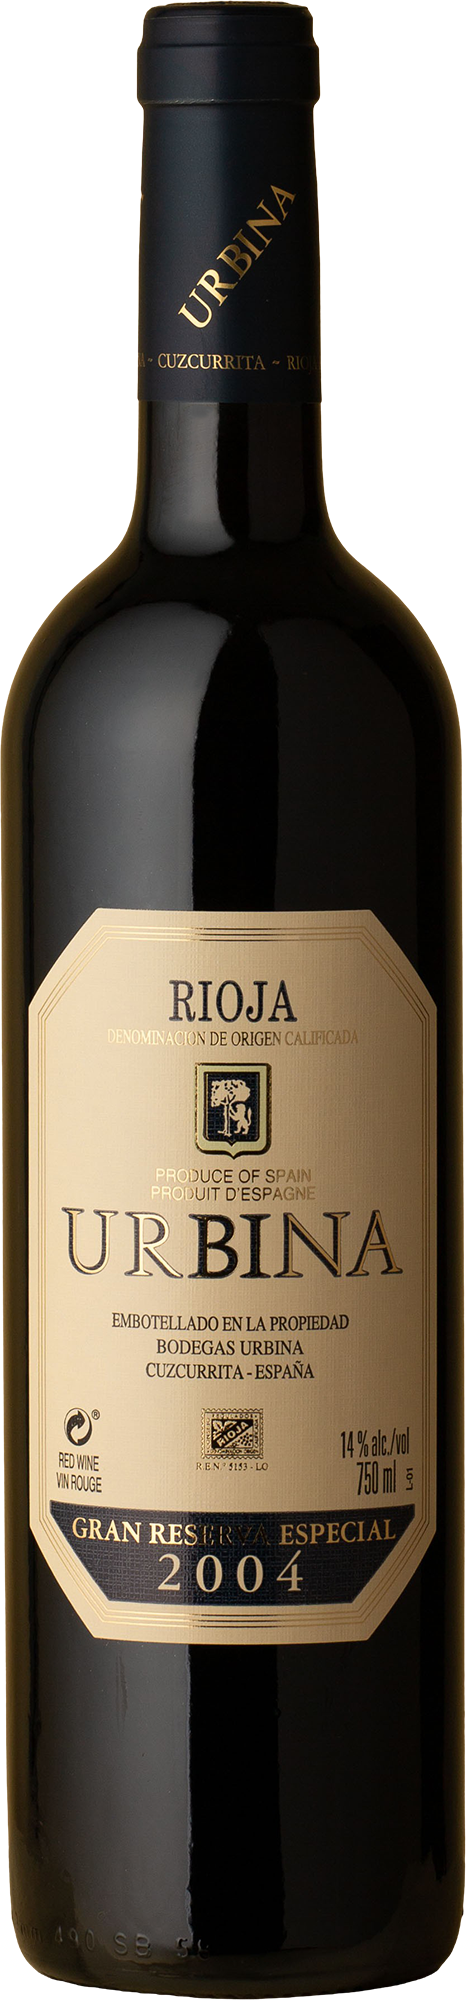 Bodegas Urbina - Rioja Gran Reserva Especial Tempranillo 2004